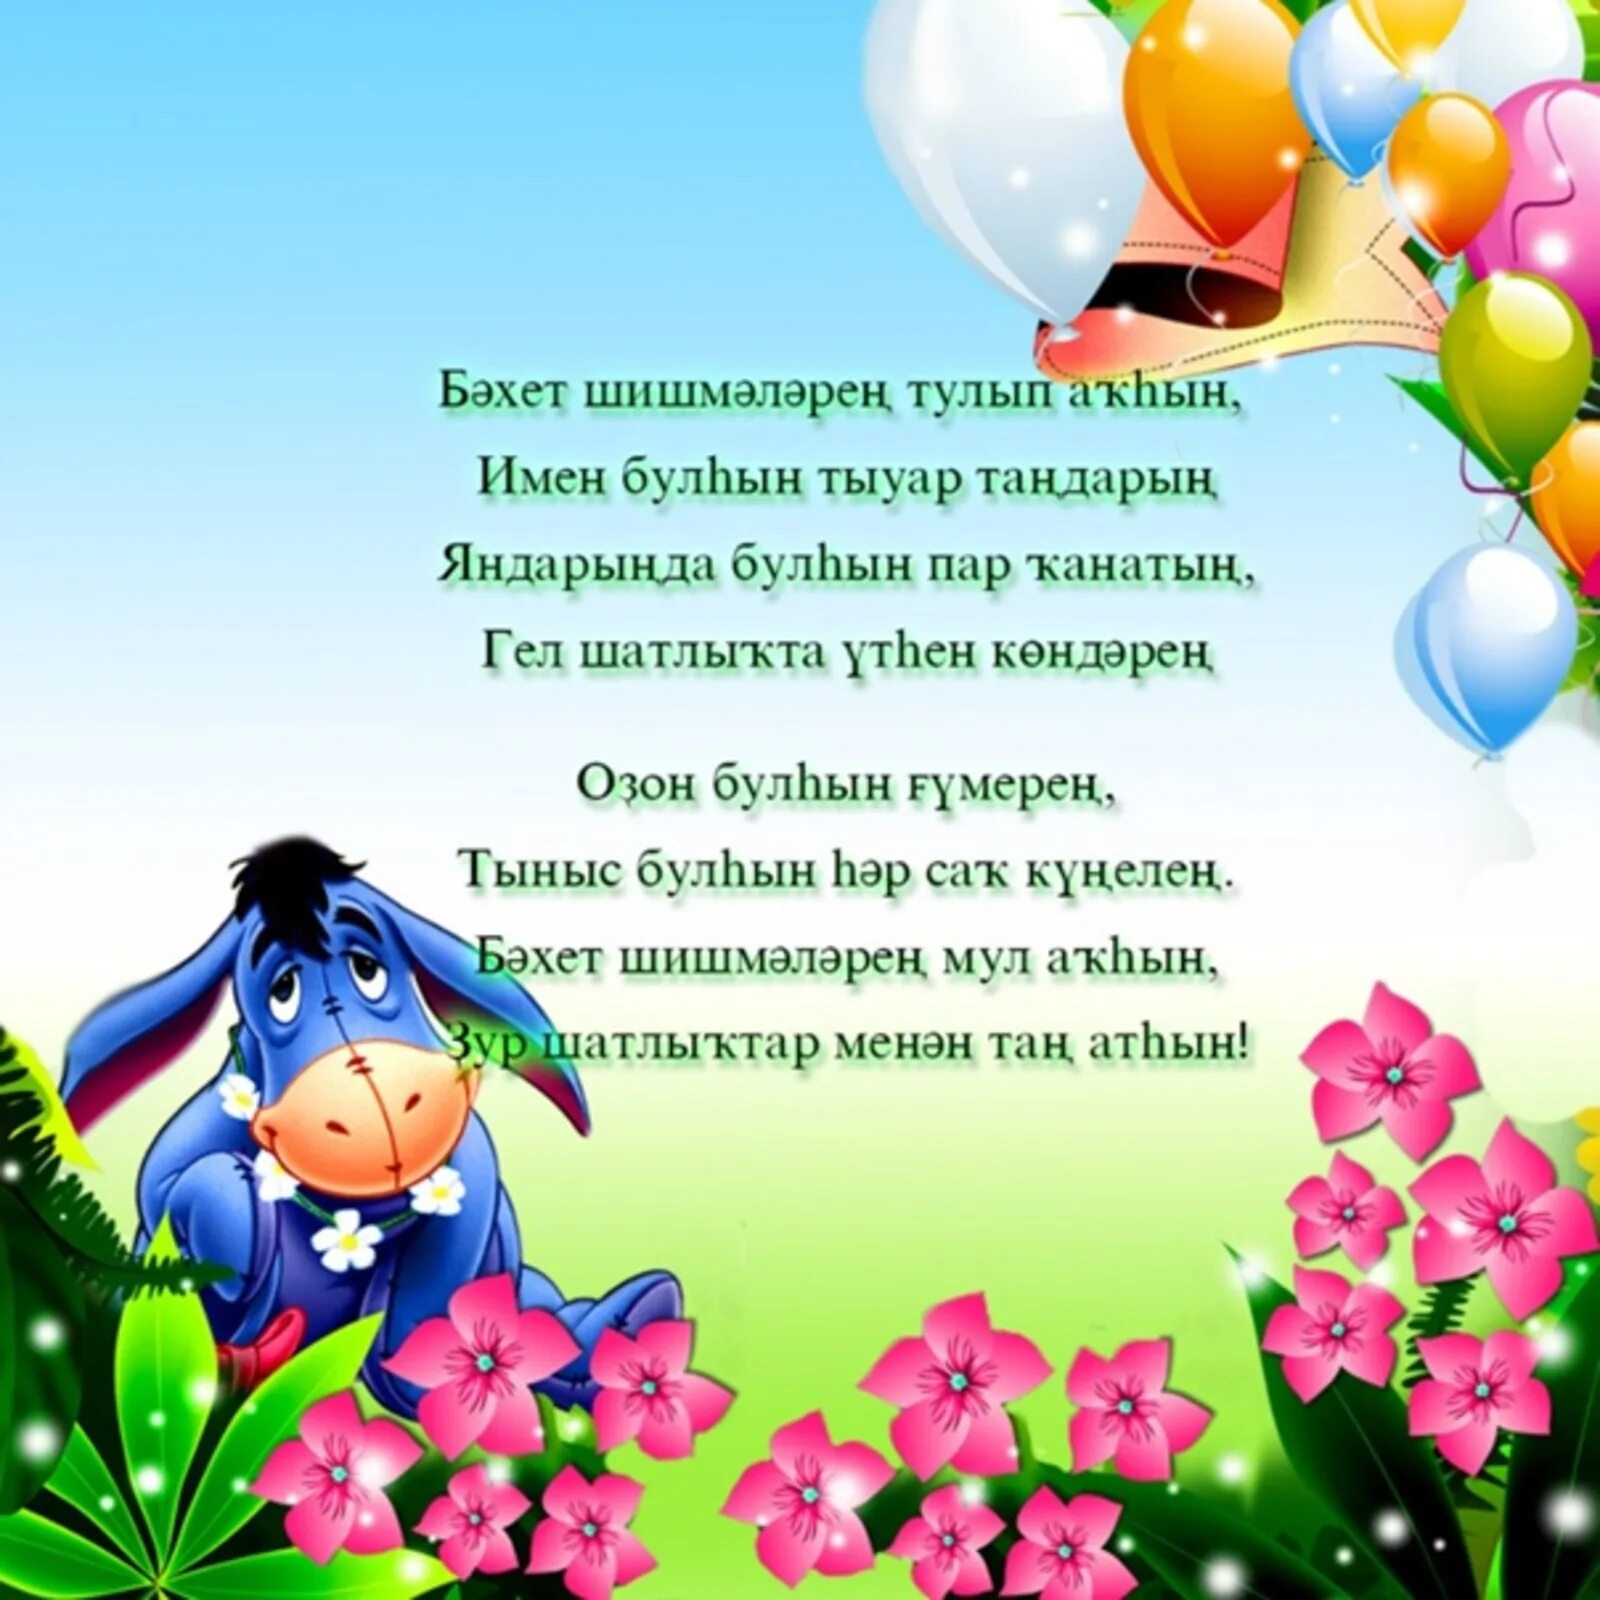 Поздравления с днём рождения на башкирском языке. Поздравления с днём рождения женщине на башкирском языке. Открытки с днём рождения на башкирском. Открытки на башкирском языке.